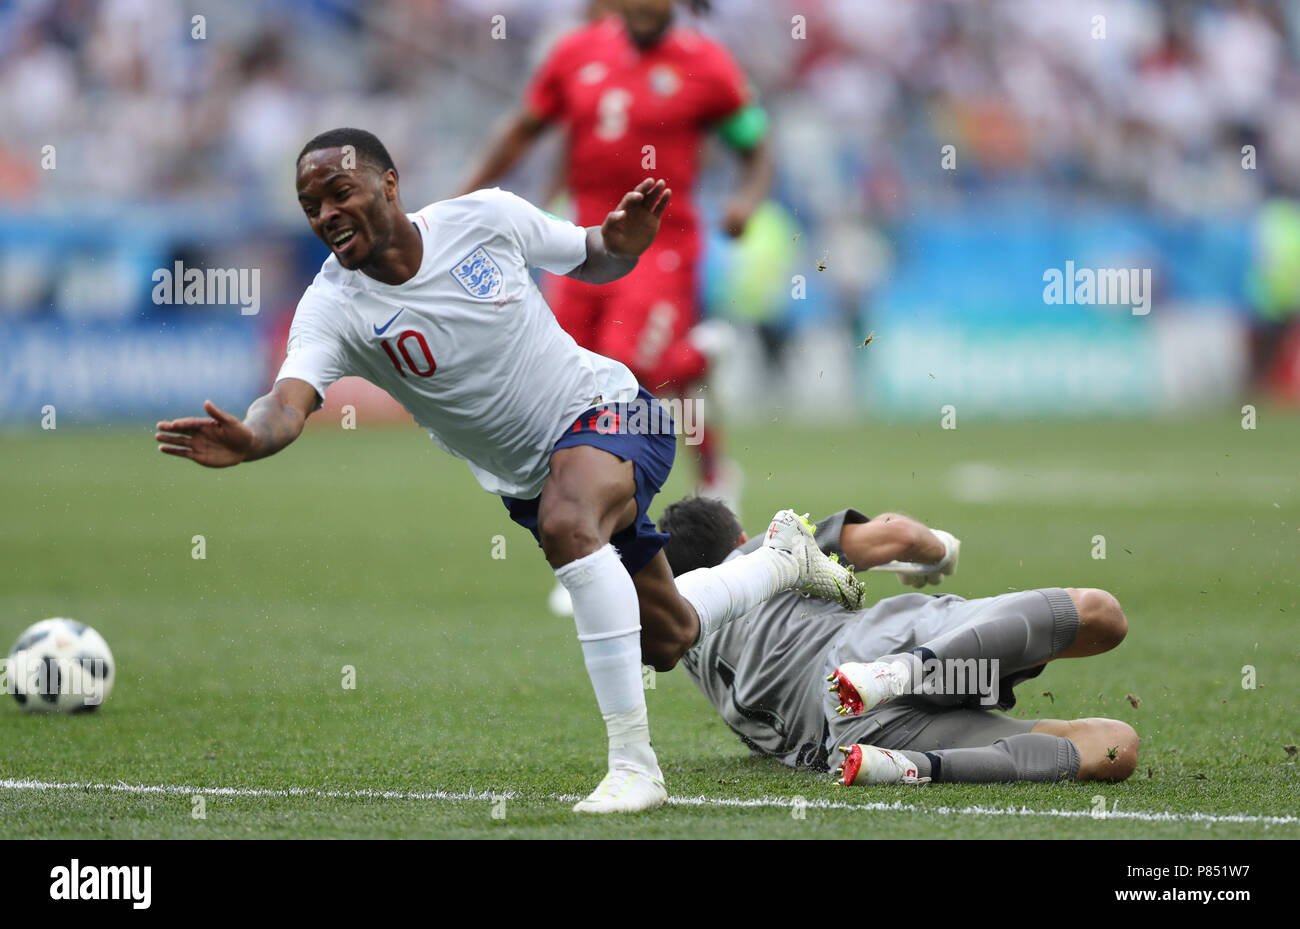 Raheem Sterling da Inglaterra disputa a bola com goleiro do Panama  realizada neste domingo, 24, no Estádio Nizhny Novgorod, na Rússia, válida pela 2ª rodada do Grupo G da Copa do Mundo 2018. Stock Photo